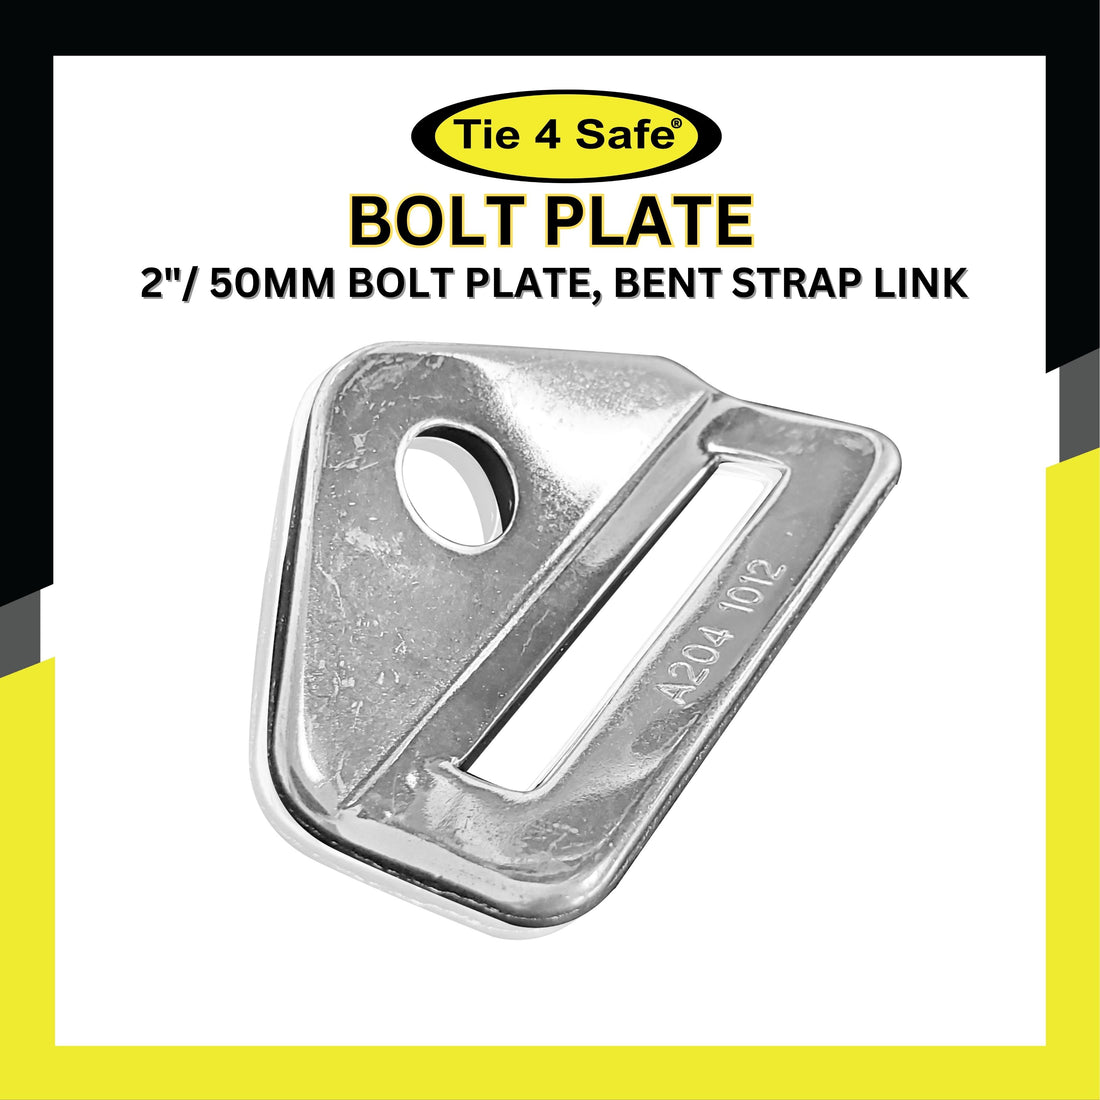 2"/ 50mm Bolt Plate, Bent Strap Link